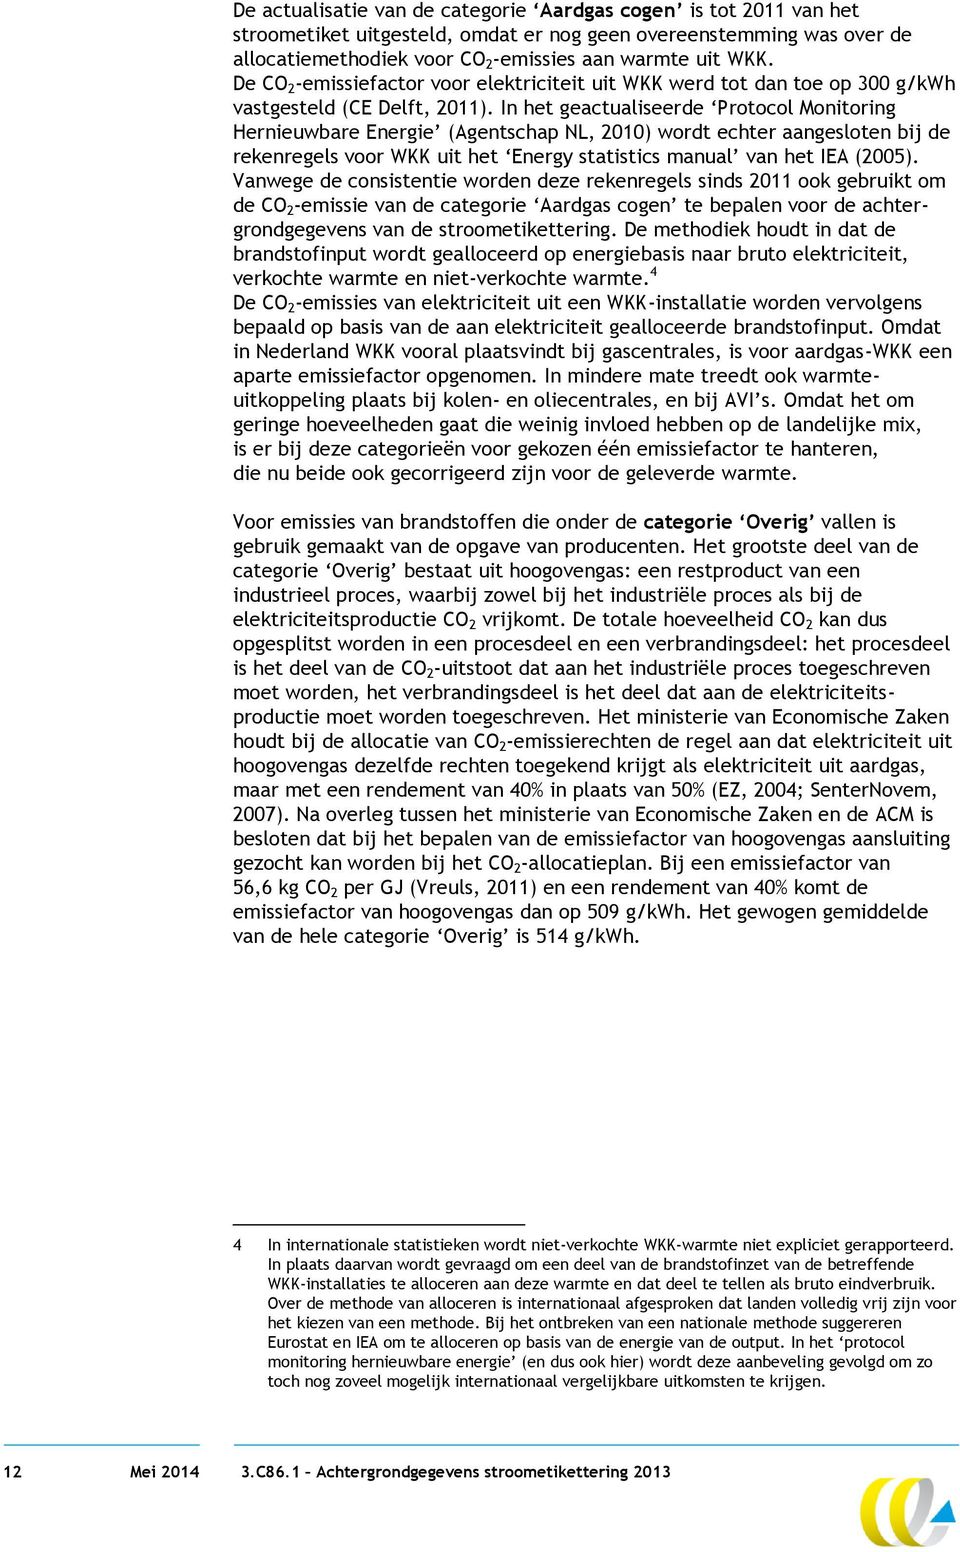 In het geactualiseerde Protocol Monitoring Hernieuwbare Energie (Agentschap NL, 2010) wordt echter aangesloten bij de rekenregels voor WKK uit het Energy statistics manual van het IEA (2005).